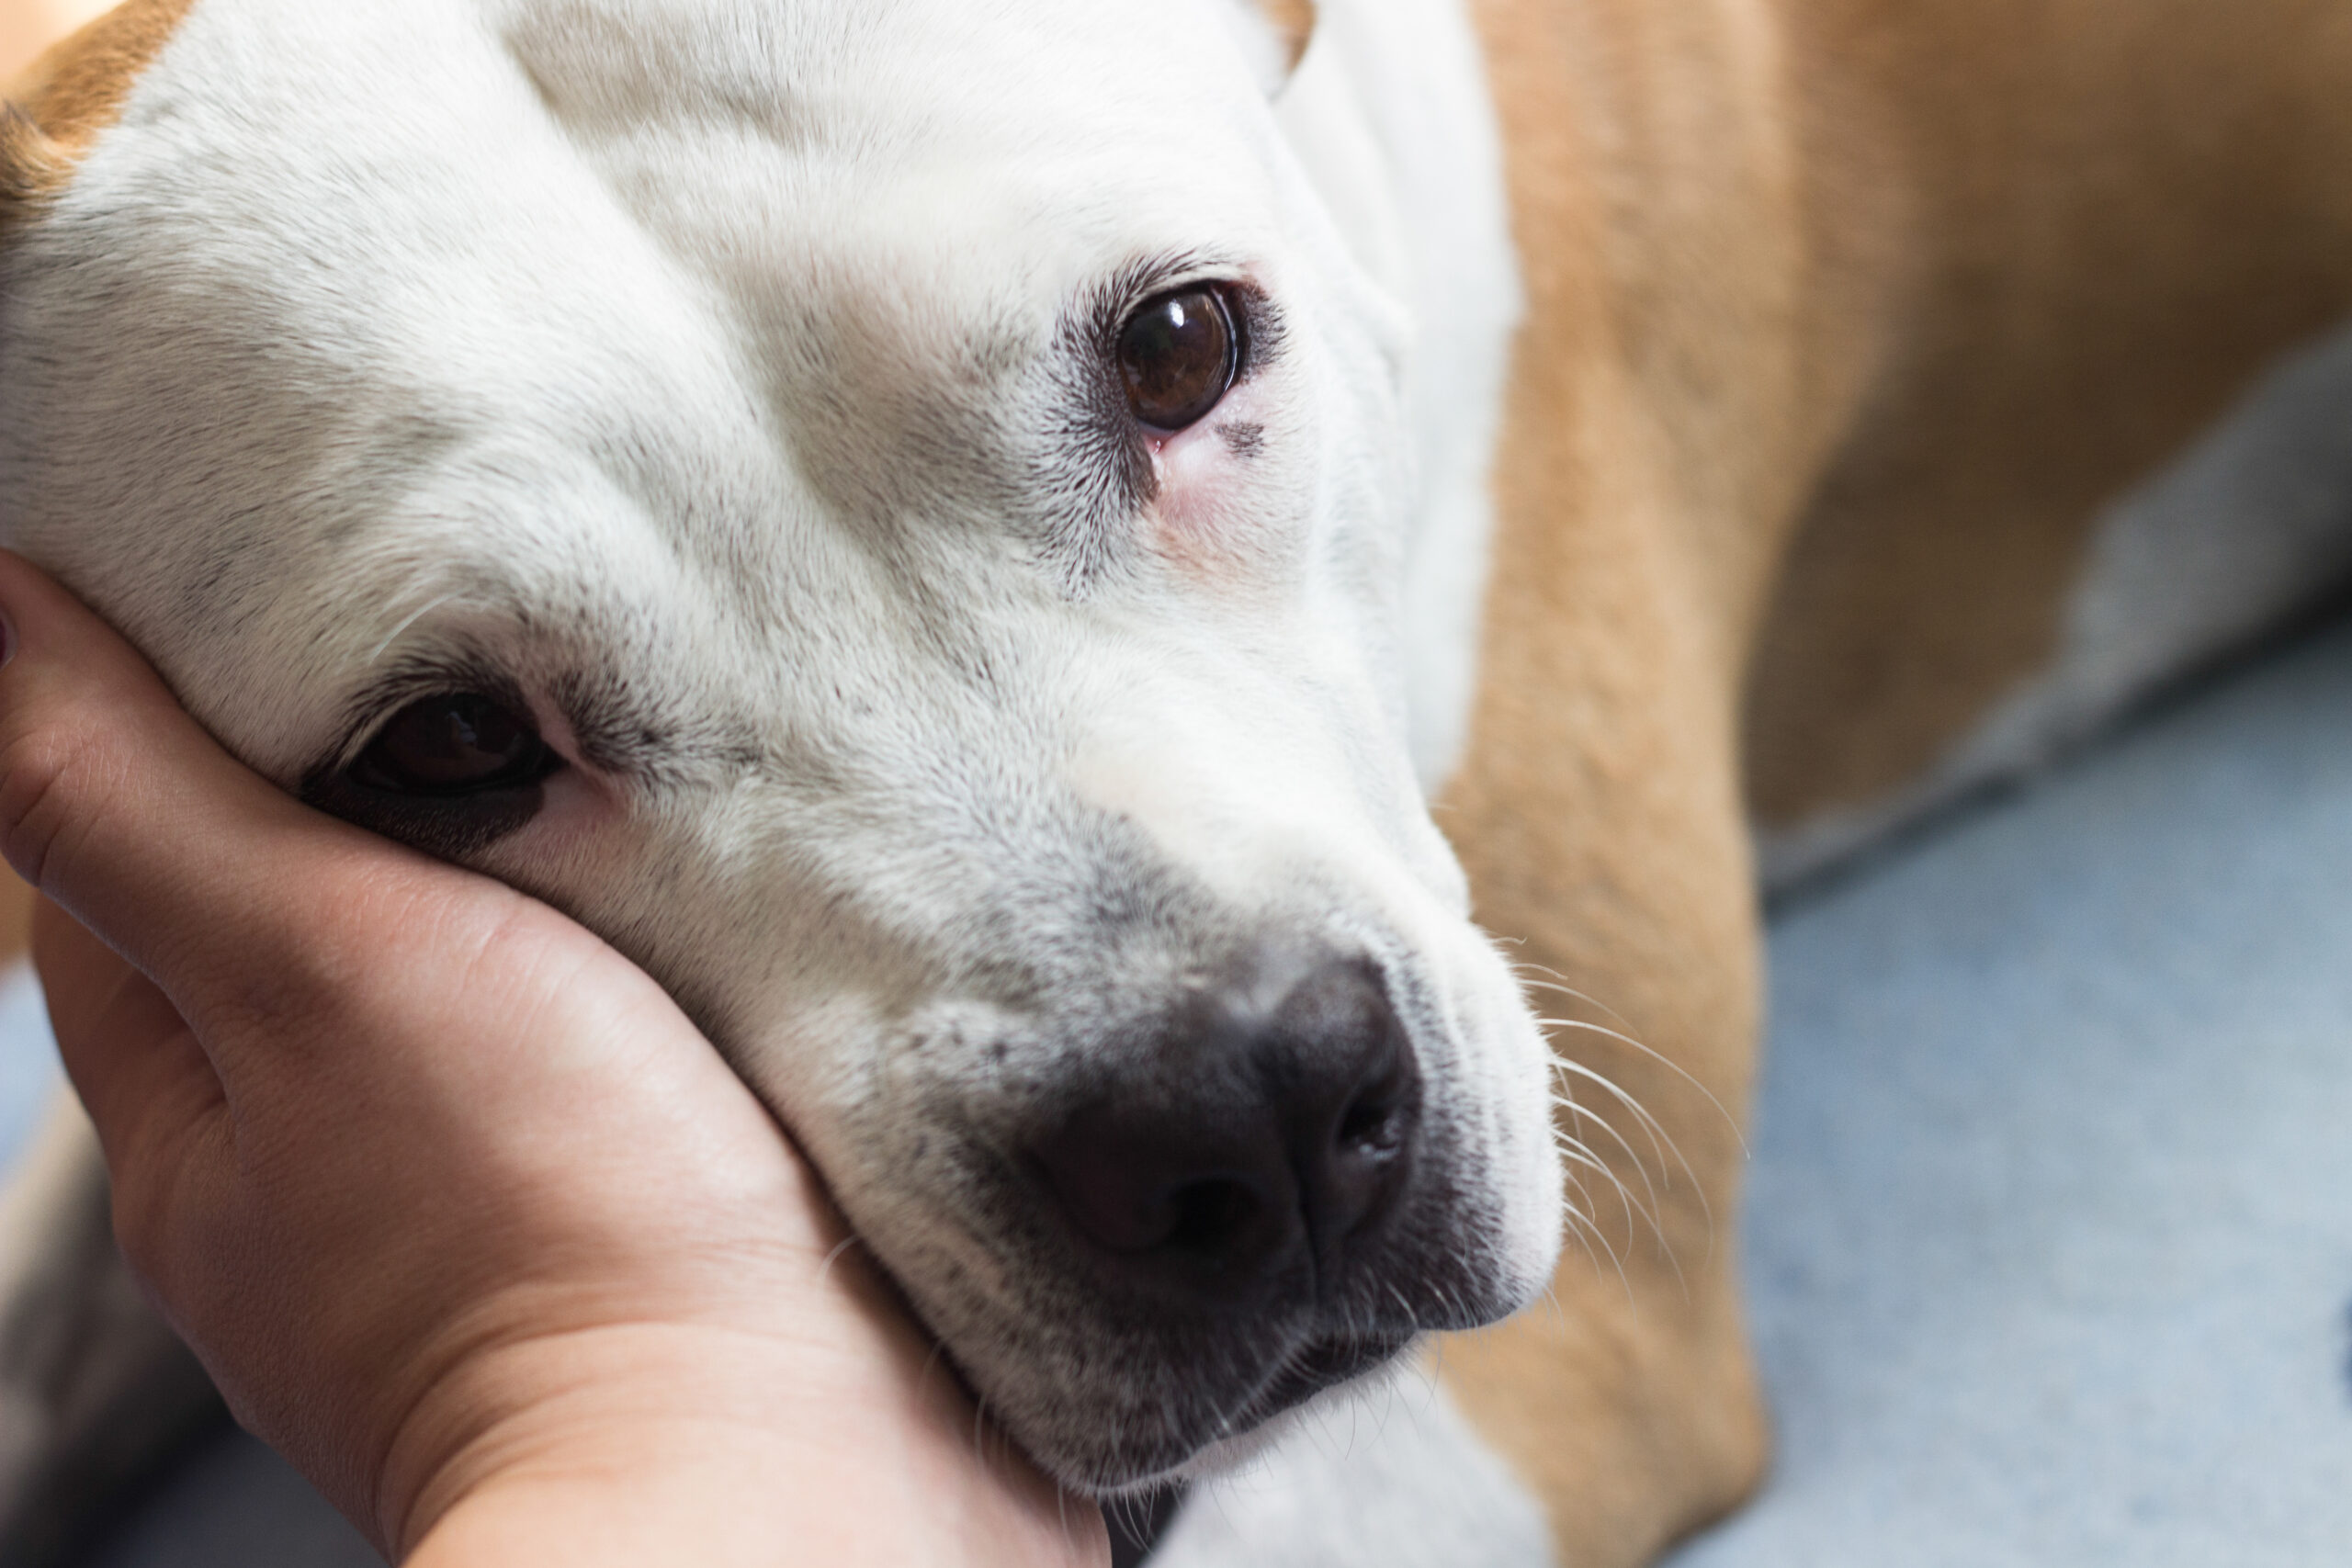 My Dog Vomited—Should I Be Concerned?